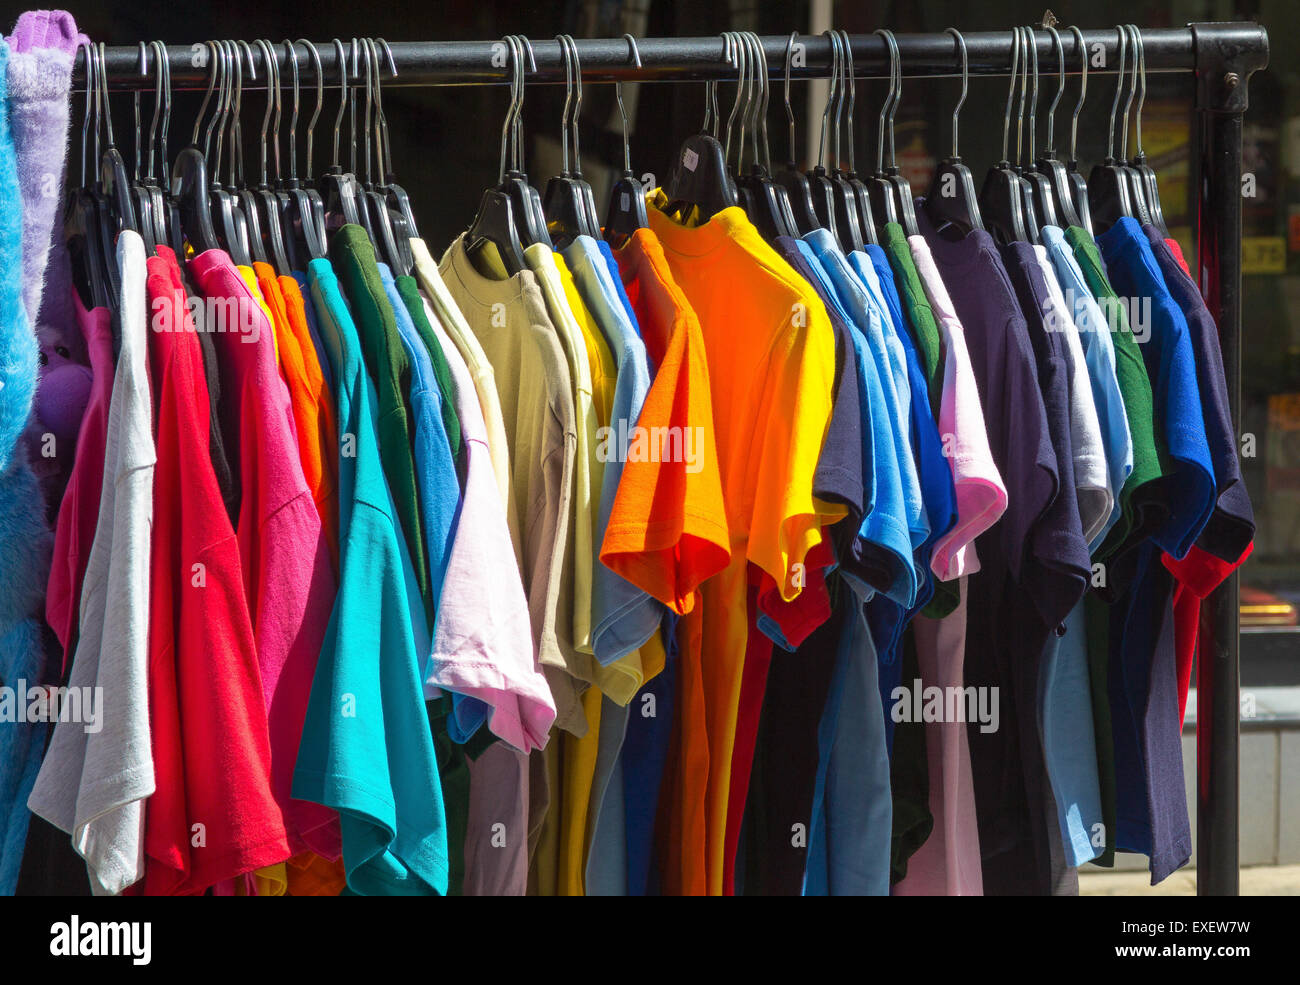 Beaucoup de robes d'été en différentes couleurs Banque D'Images